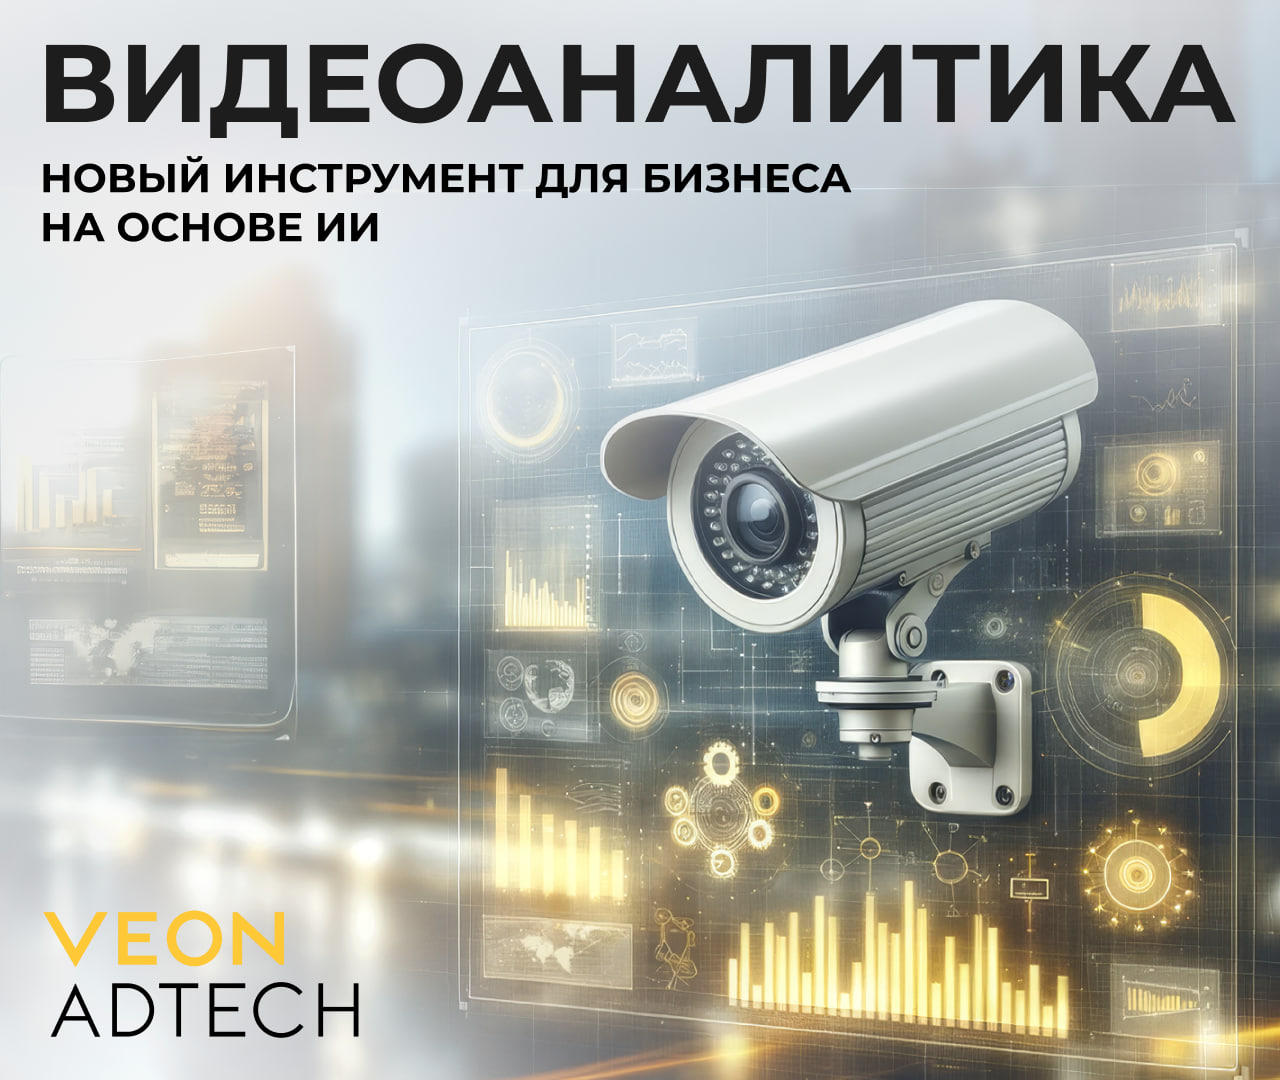 Новый взгляд на бизнес и безопасность: VEON AdTech запускает услугу видеоаналитики